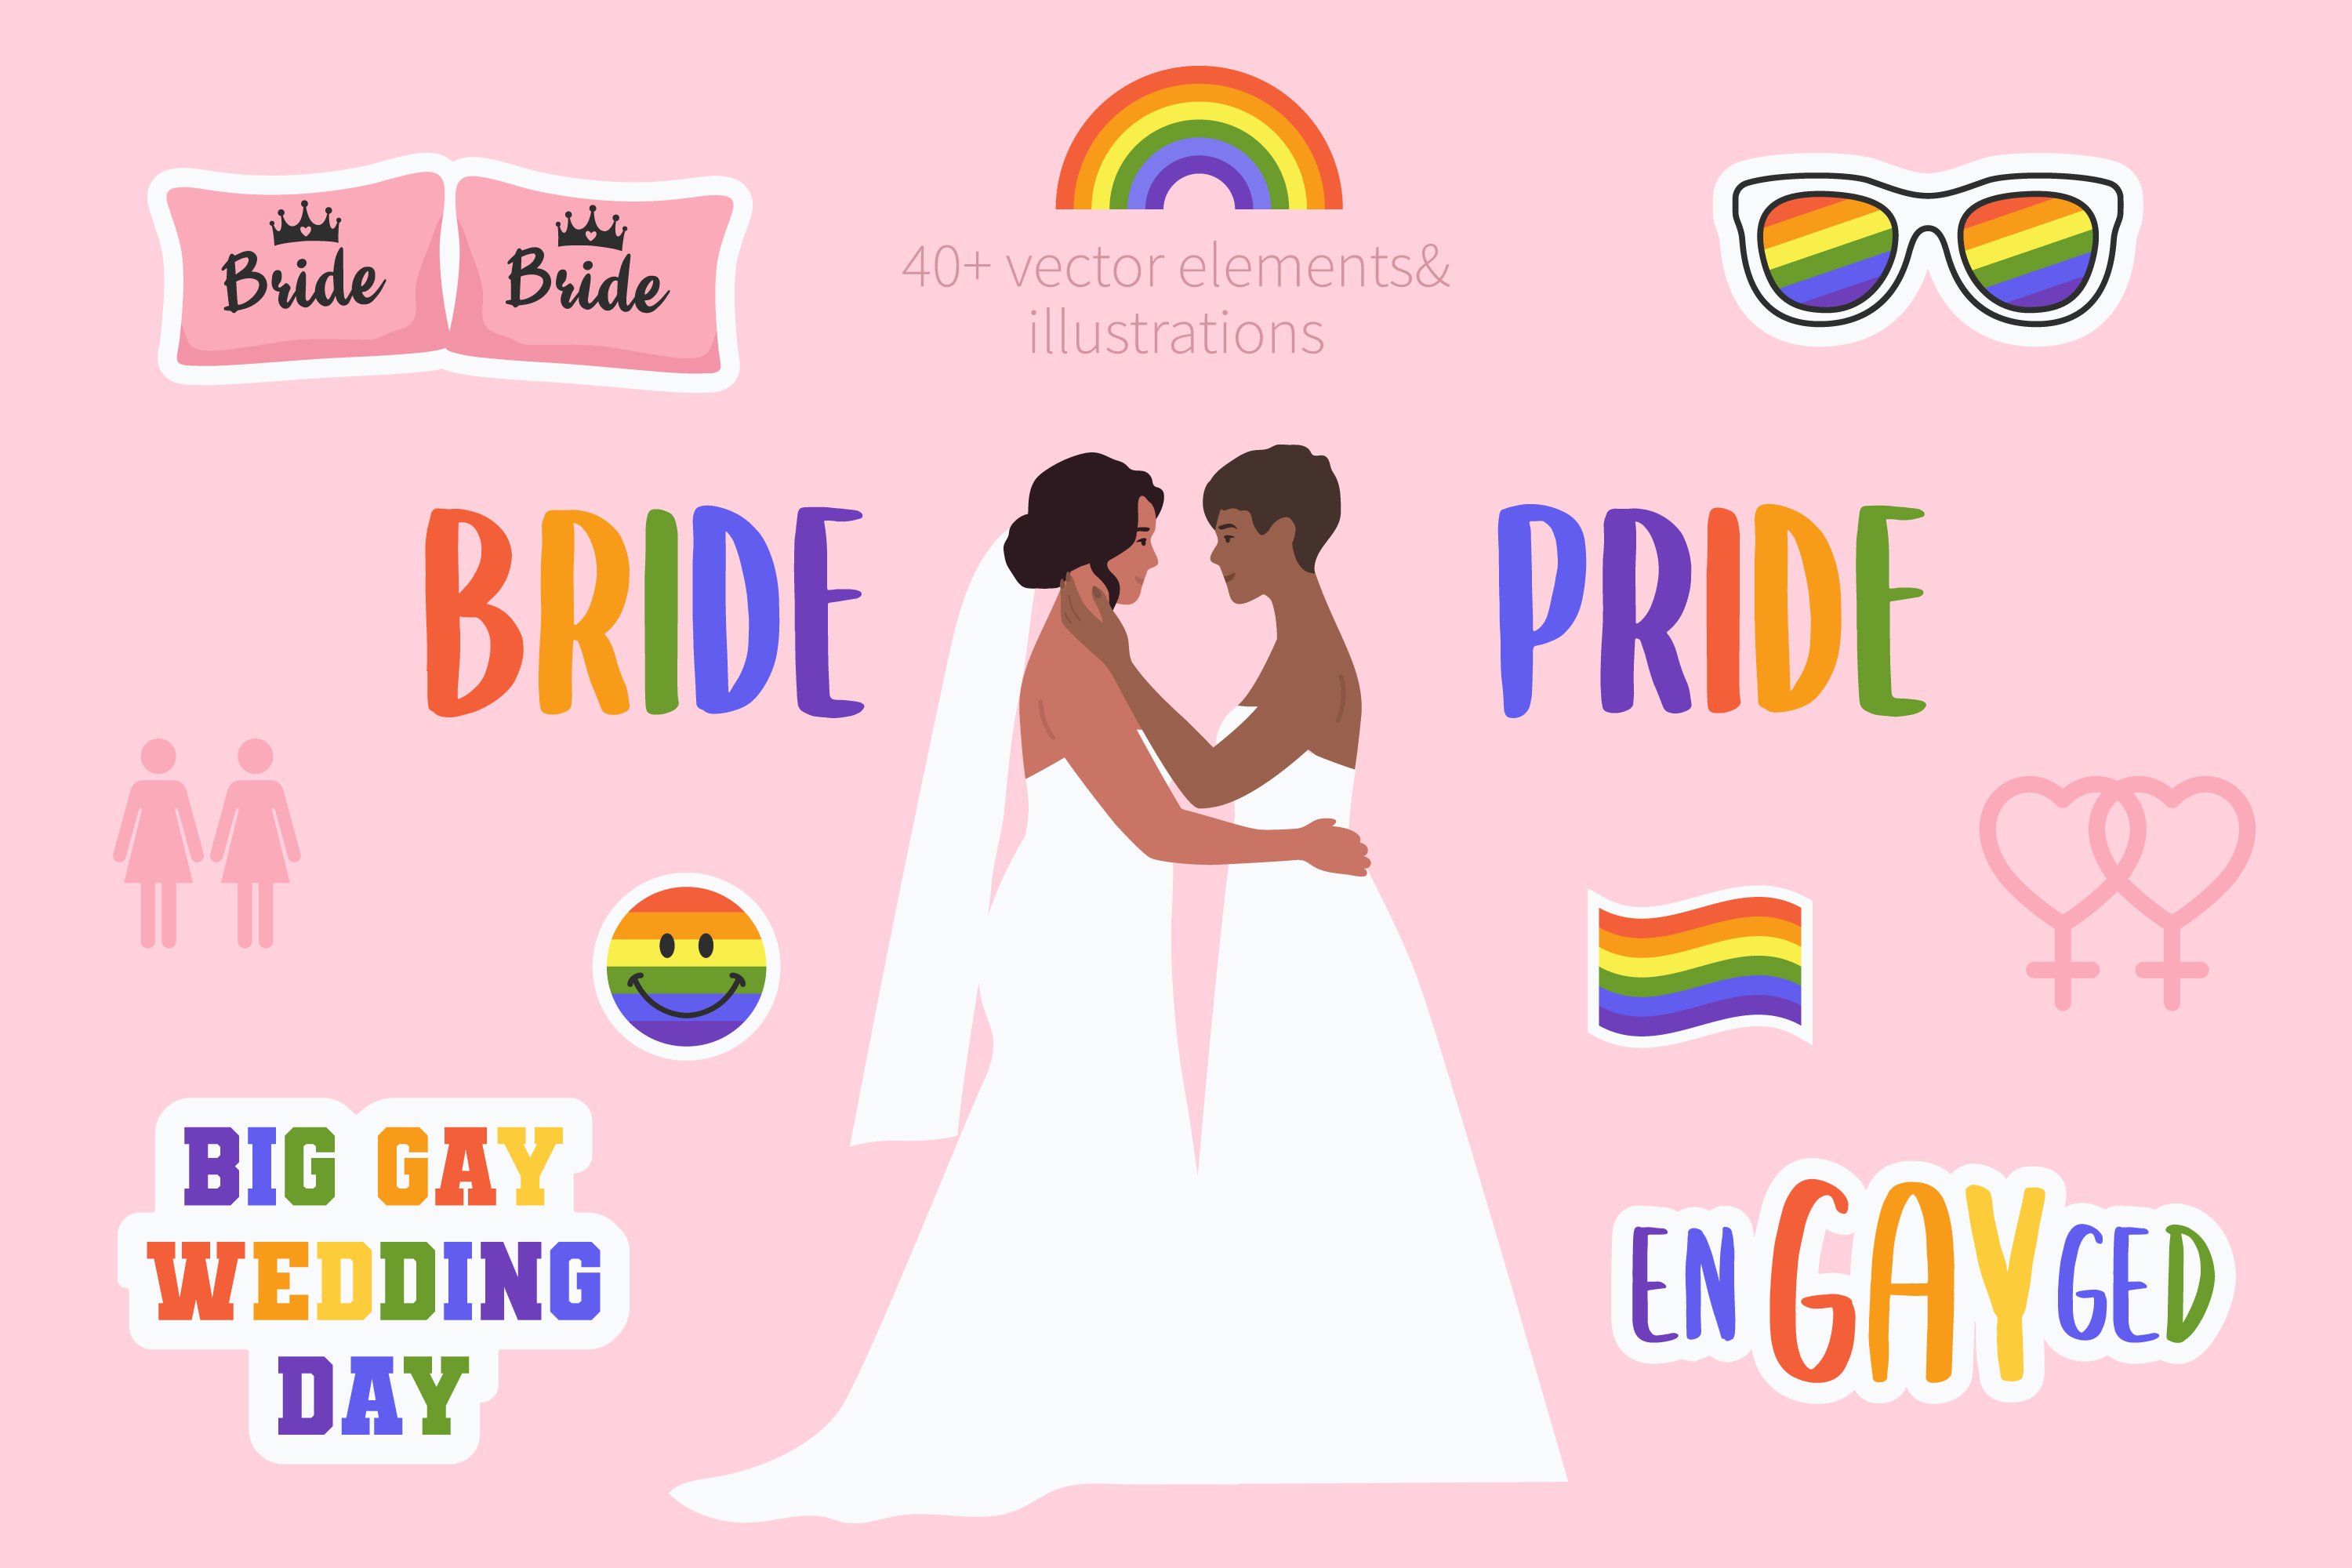 Bride Pride LGBT wedding vectors cover image.